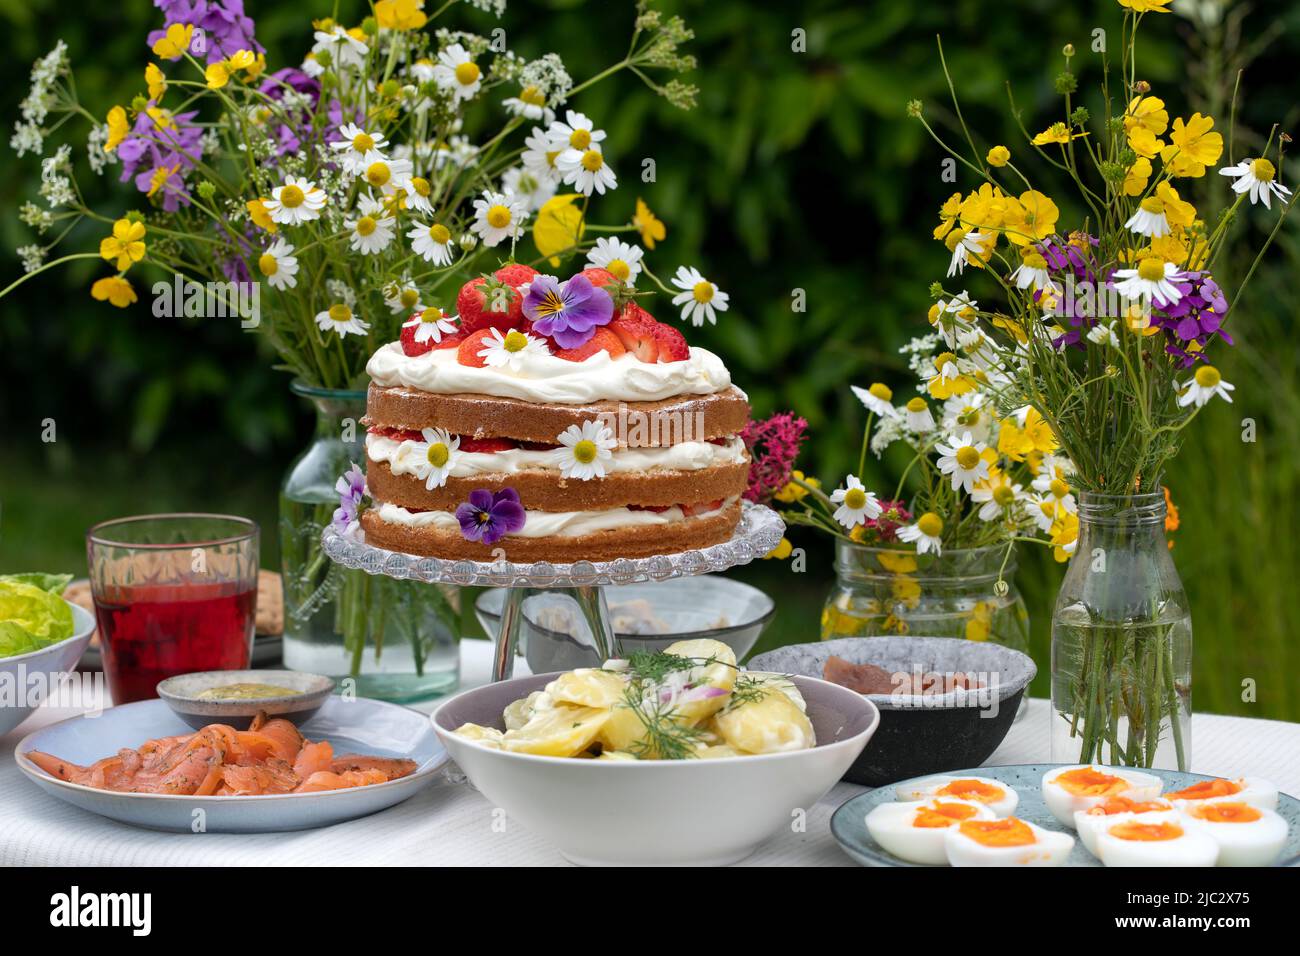 Repas scandinave mi-été avec gâteau à la fraise et à la crème, salade de pommes de terre, saumon et œufs Banque D'Images